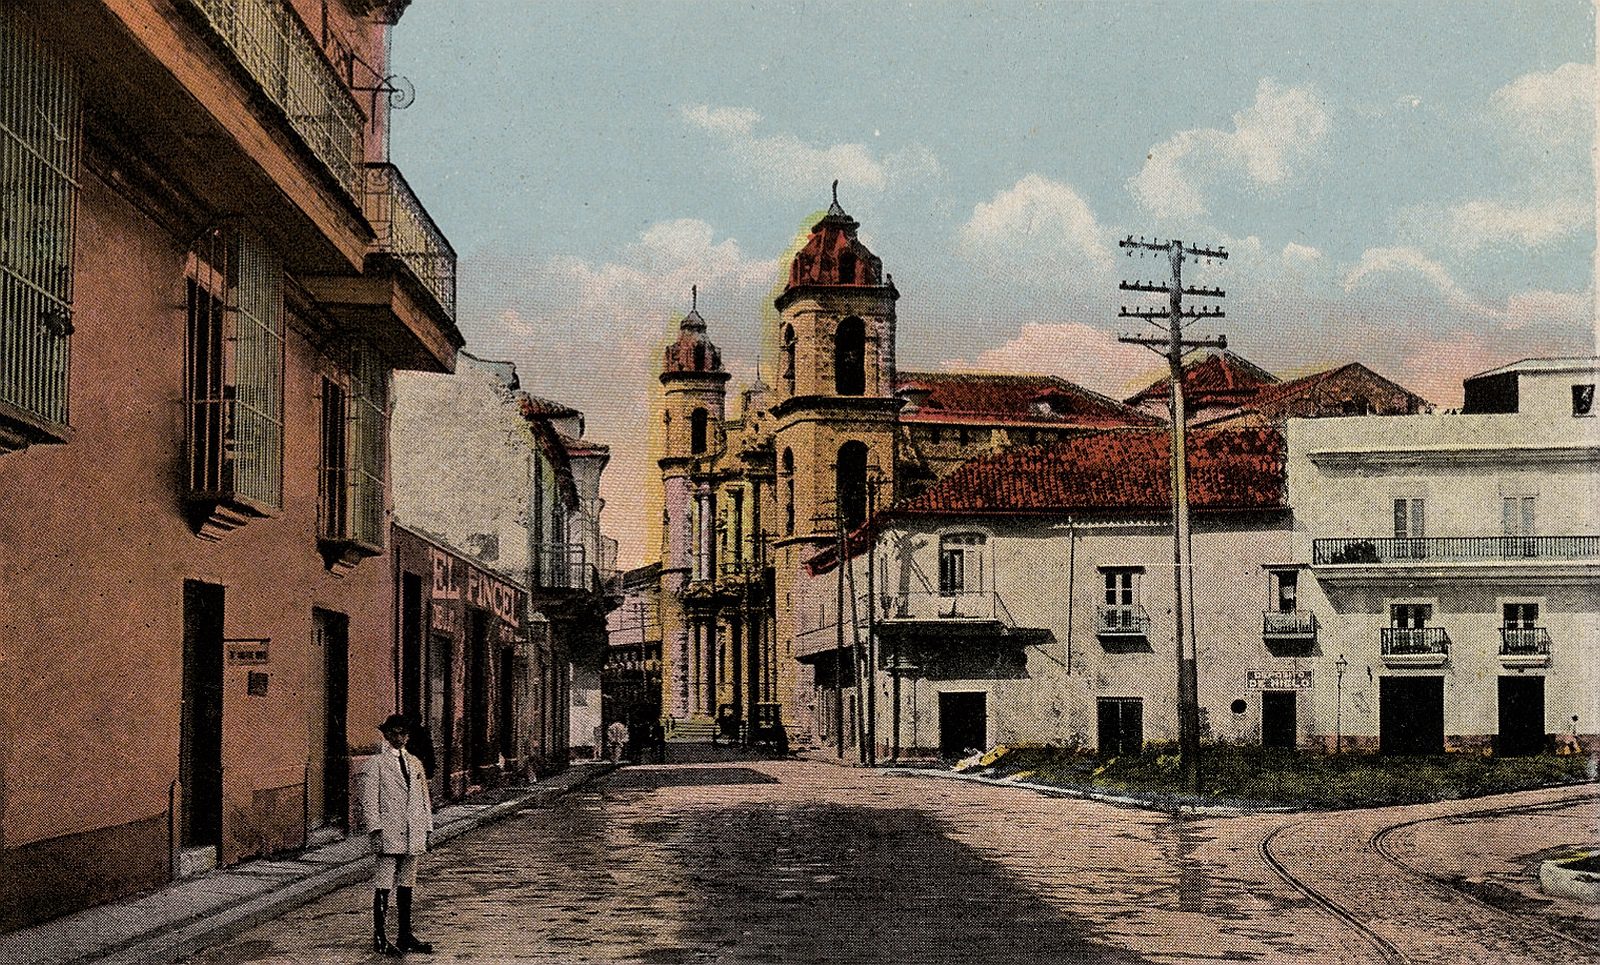 Calle Empedrado: Boquete, Catedral y Bodeguita